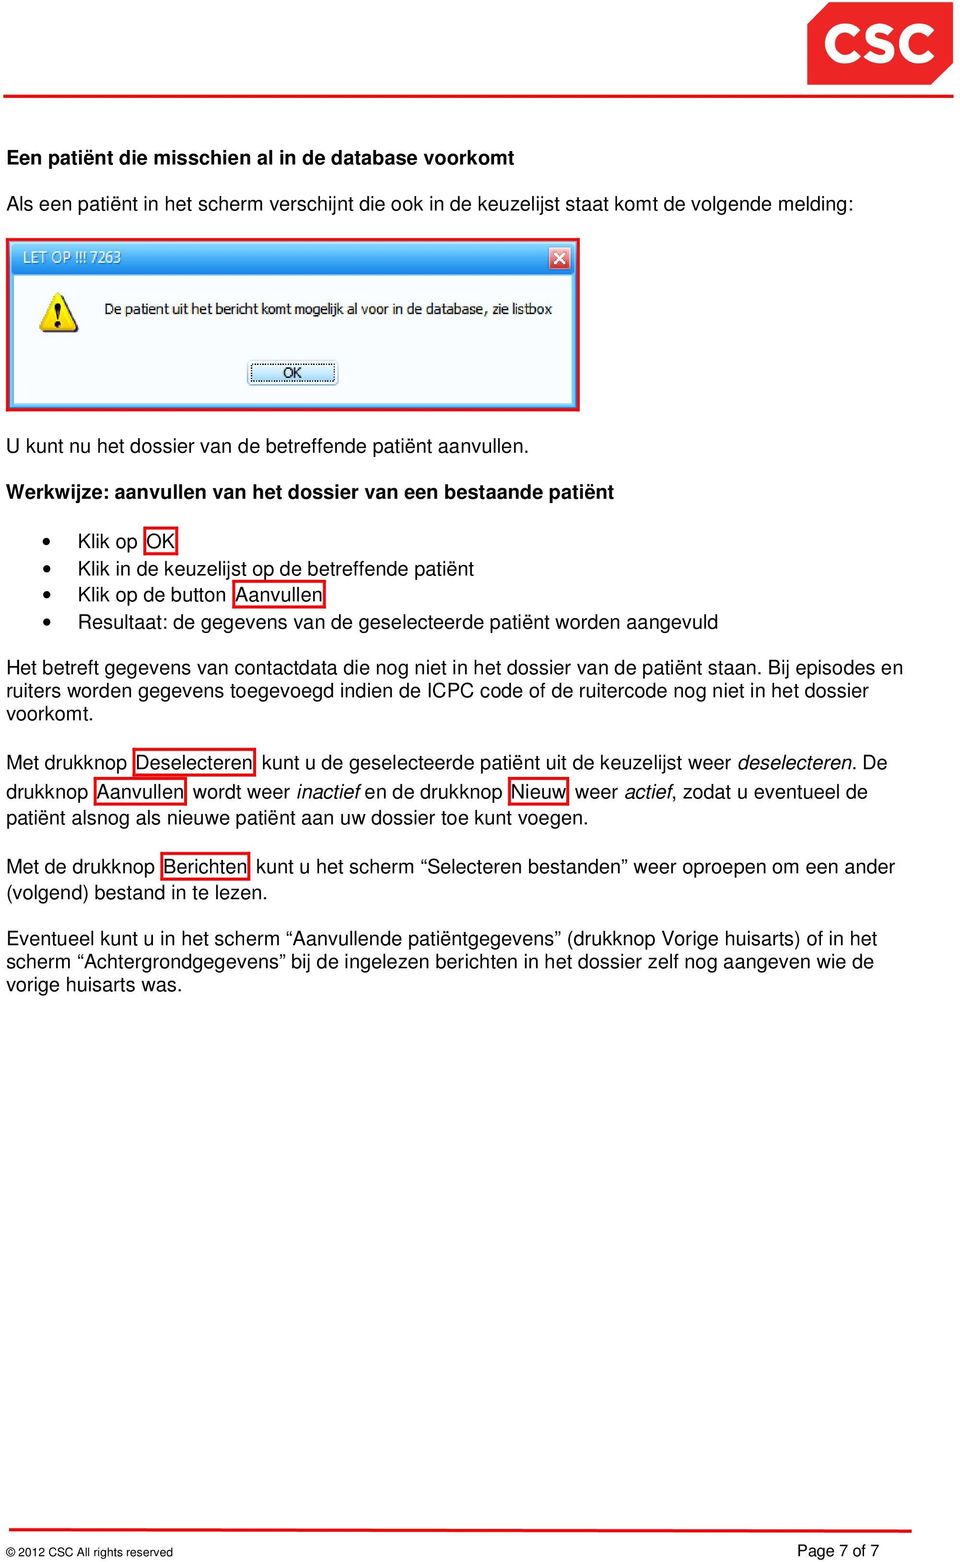 Werkwijze: aanvullen van het dossier van een bestaande patiënt Klik op OK Klik in de keuzelijst op de betreffende patiënt Klik op de button Aanvullen Resultaat: de gegevens van de geselecteerde